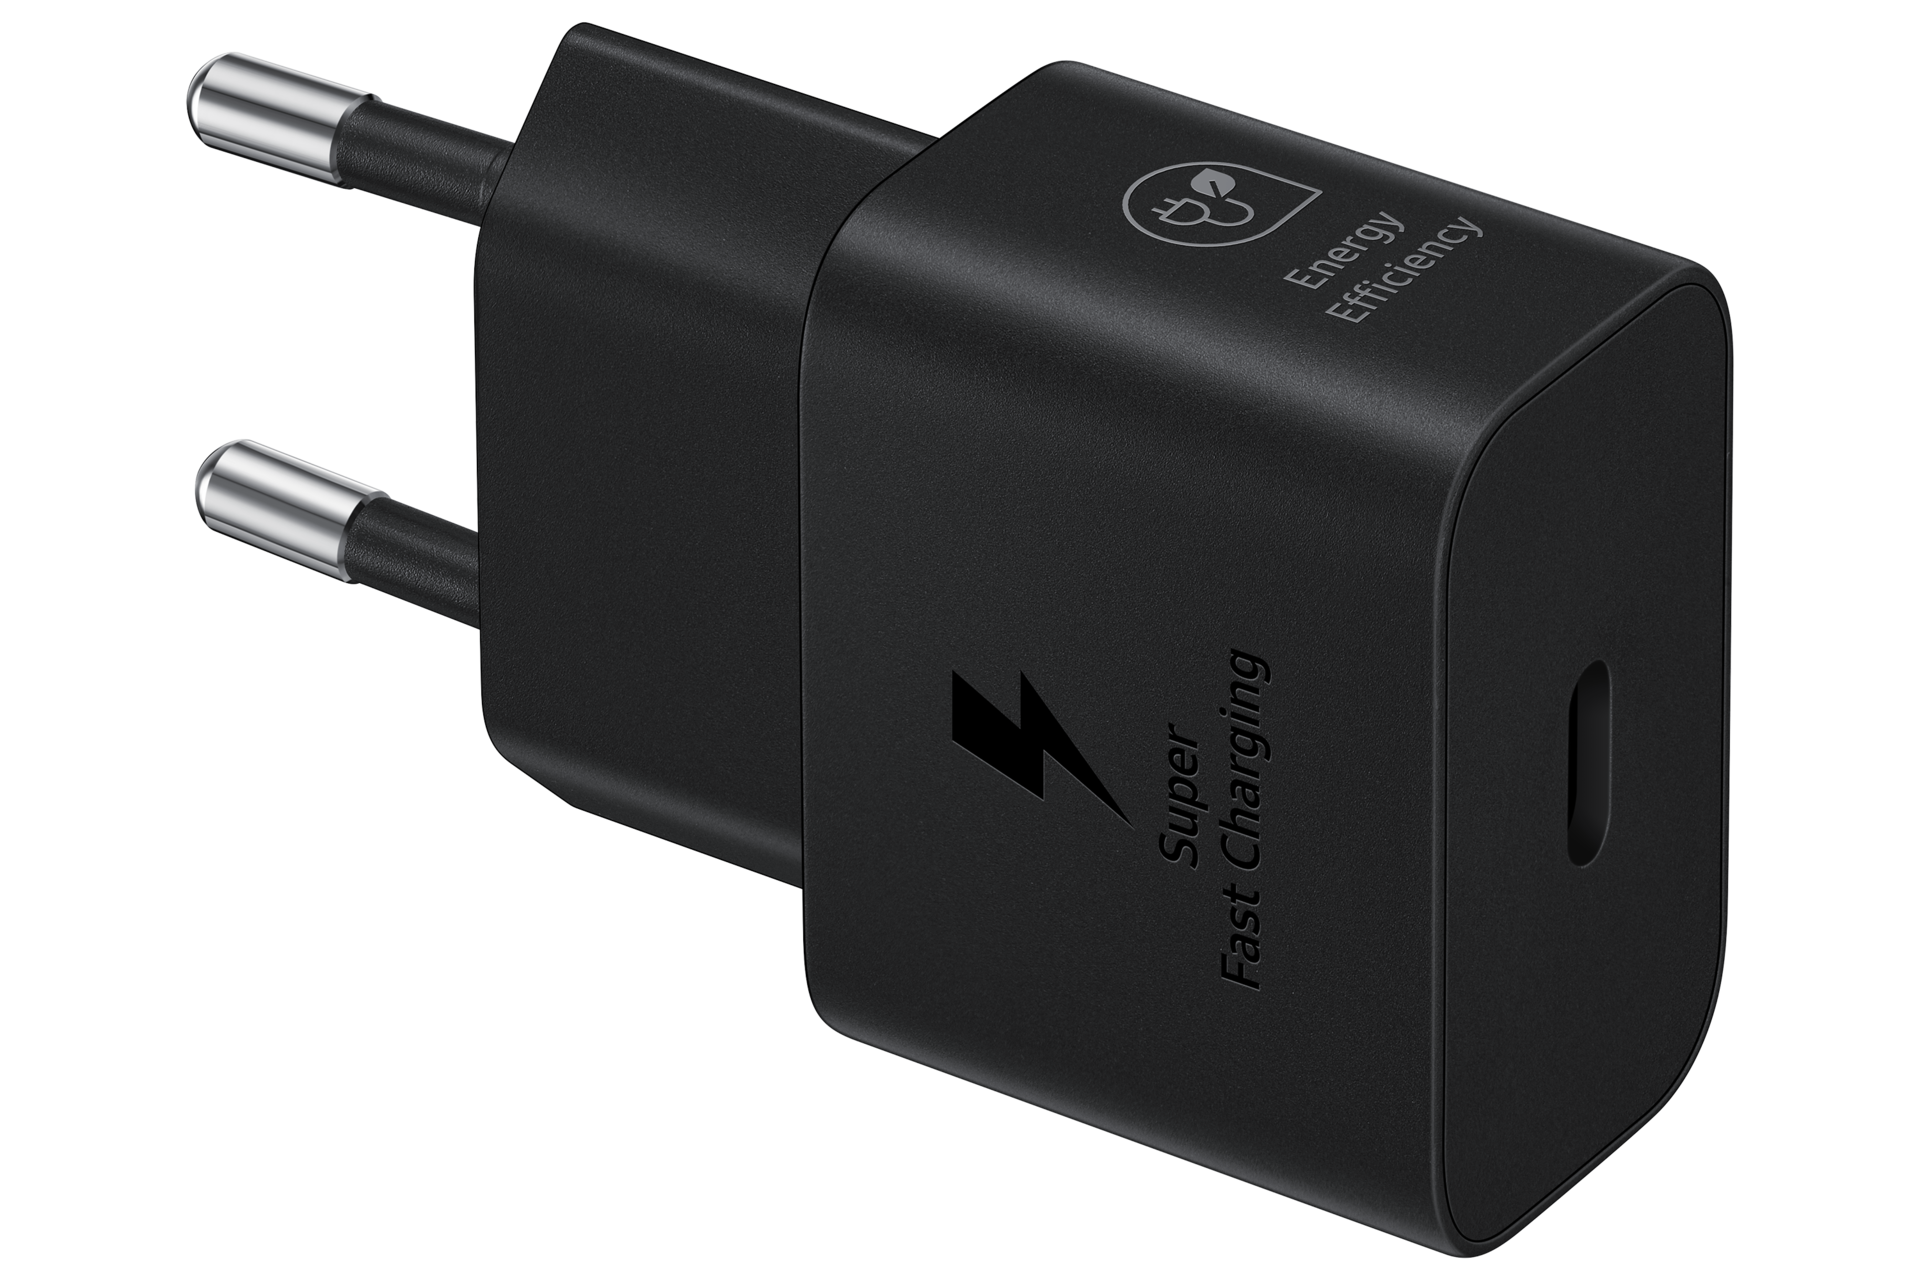 Портативное зарядное устройство USB для мобильных устройств Duracell Portable USB Charger 1800mAh